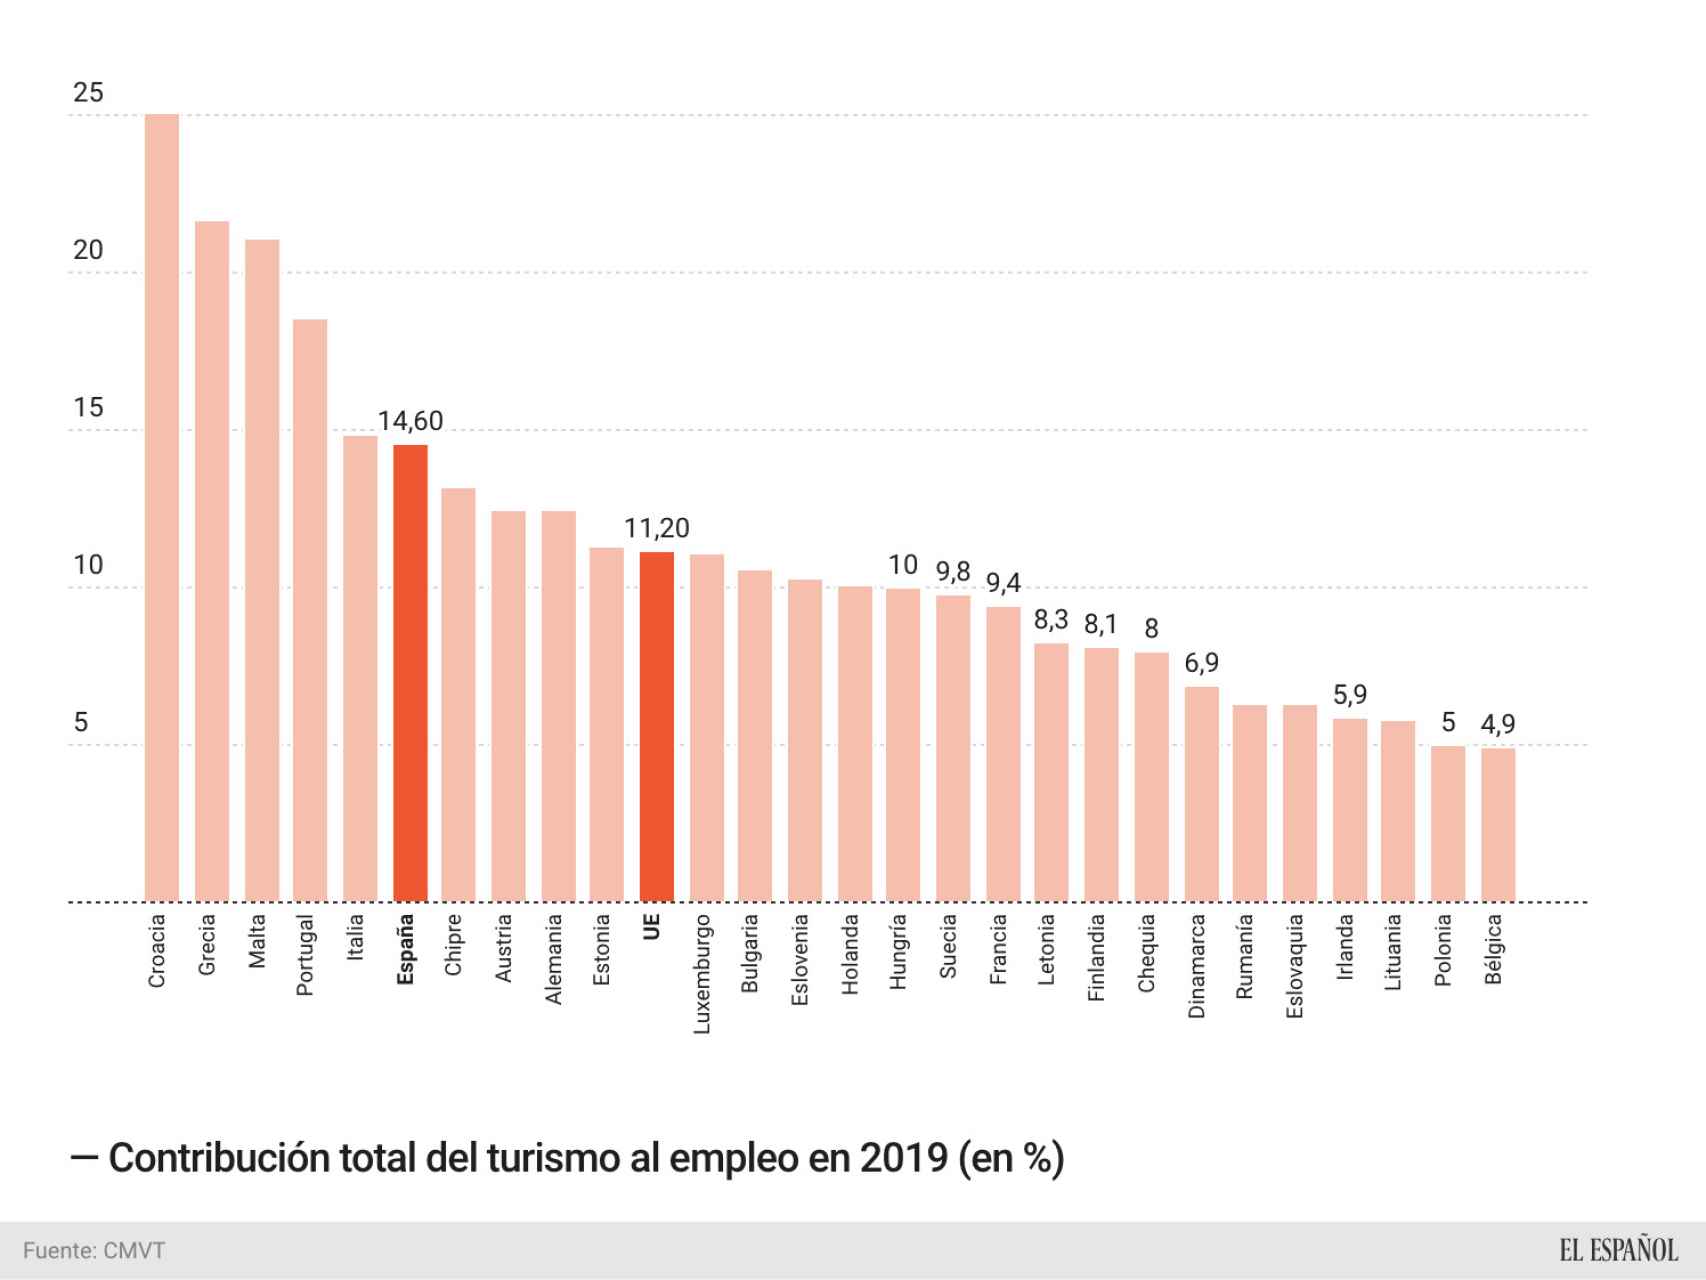 Contribución total del turismo al empleo en 2019 en la UE